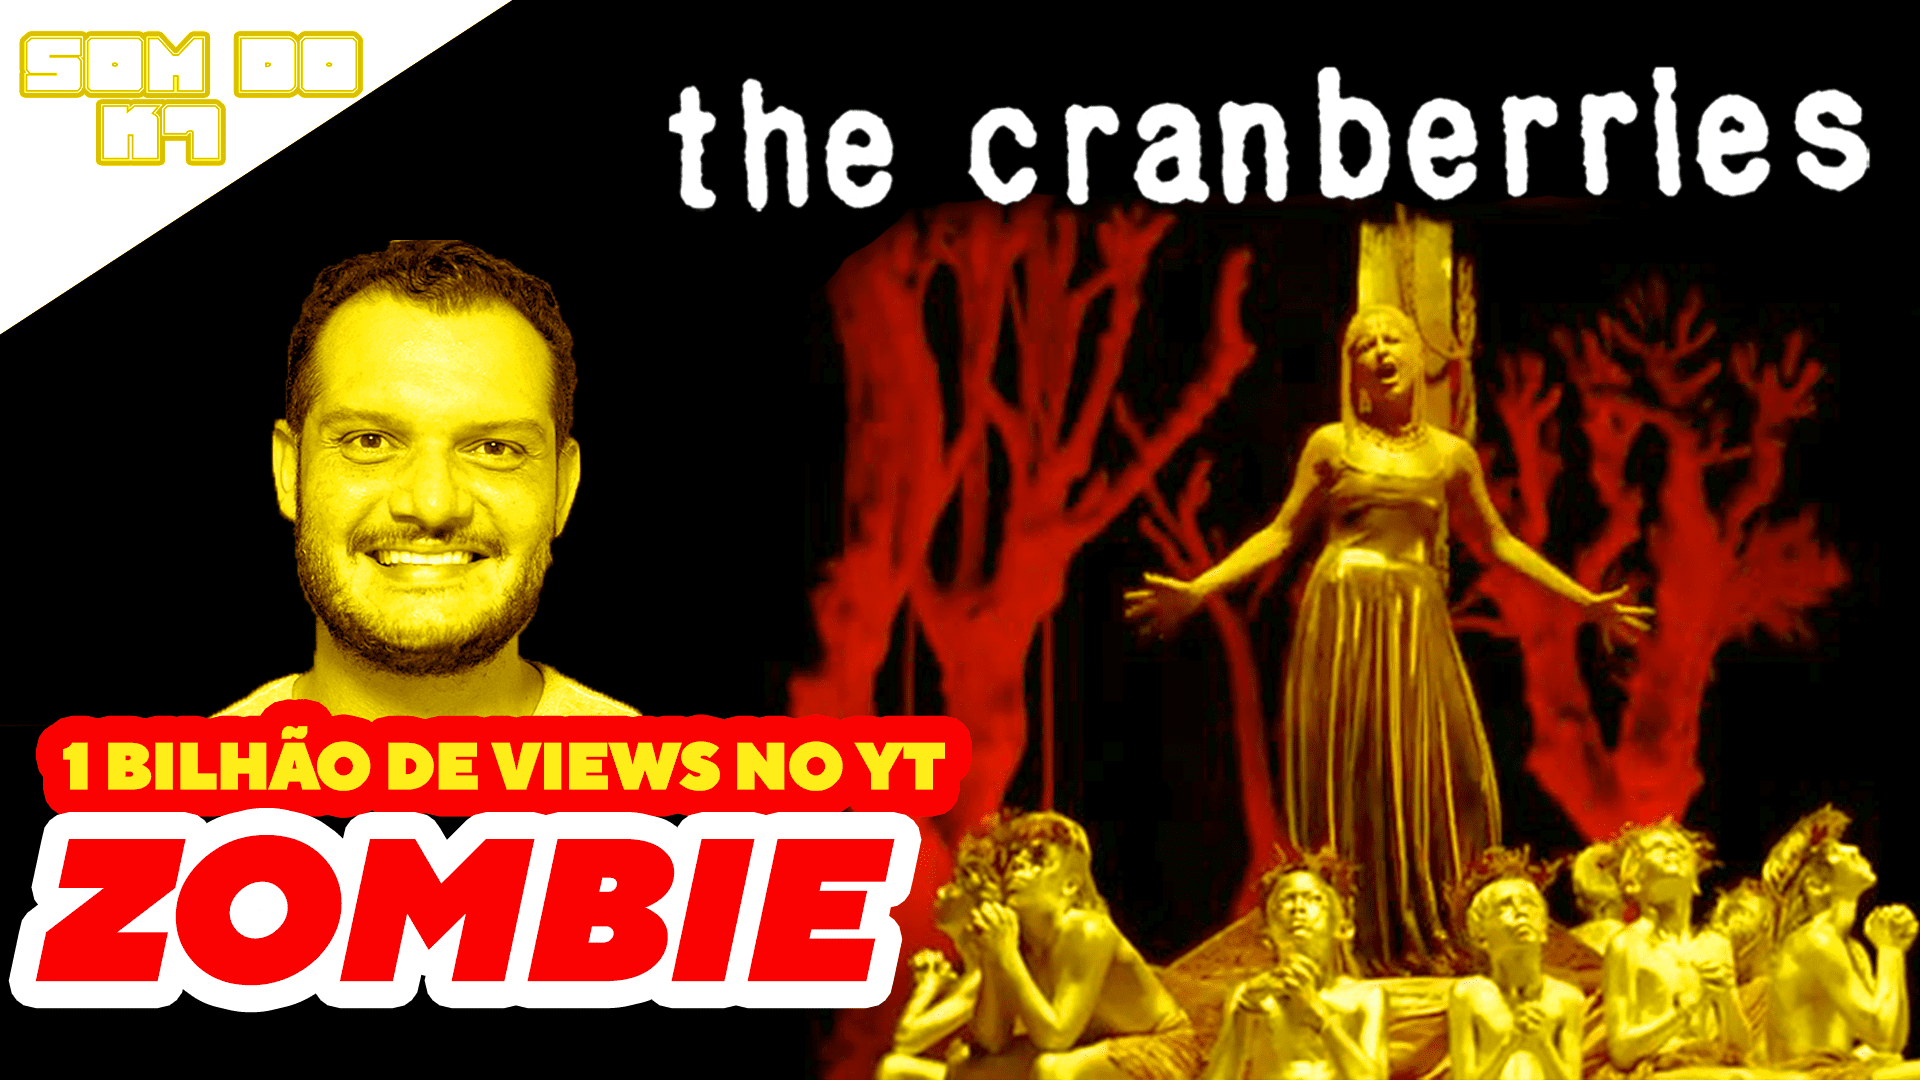 O Som do K7: Zombie do The Cranberries rompe a marca de um bilhão de views no YouTube, conheça a triste historia da musica